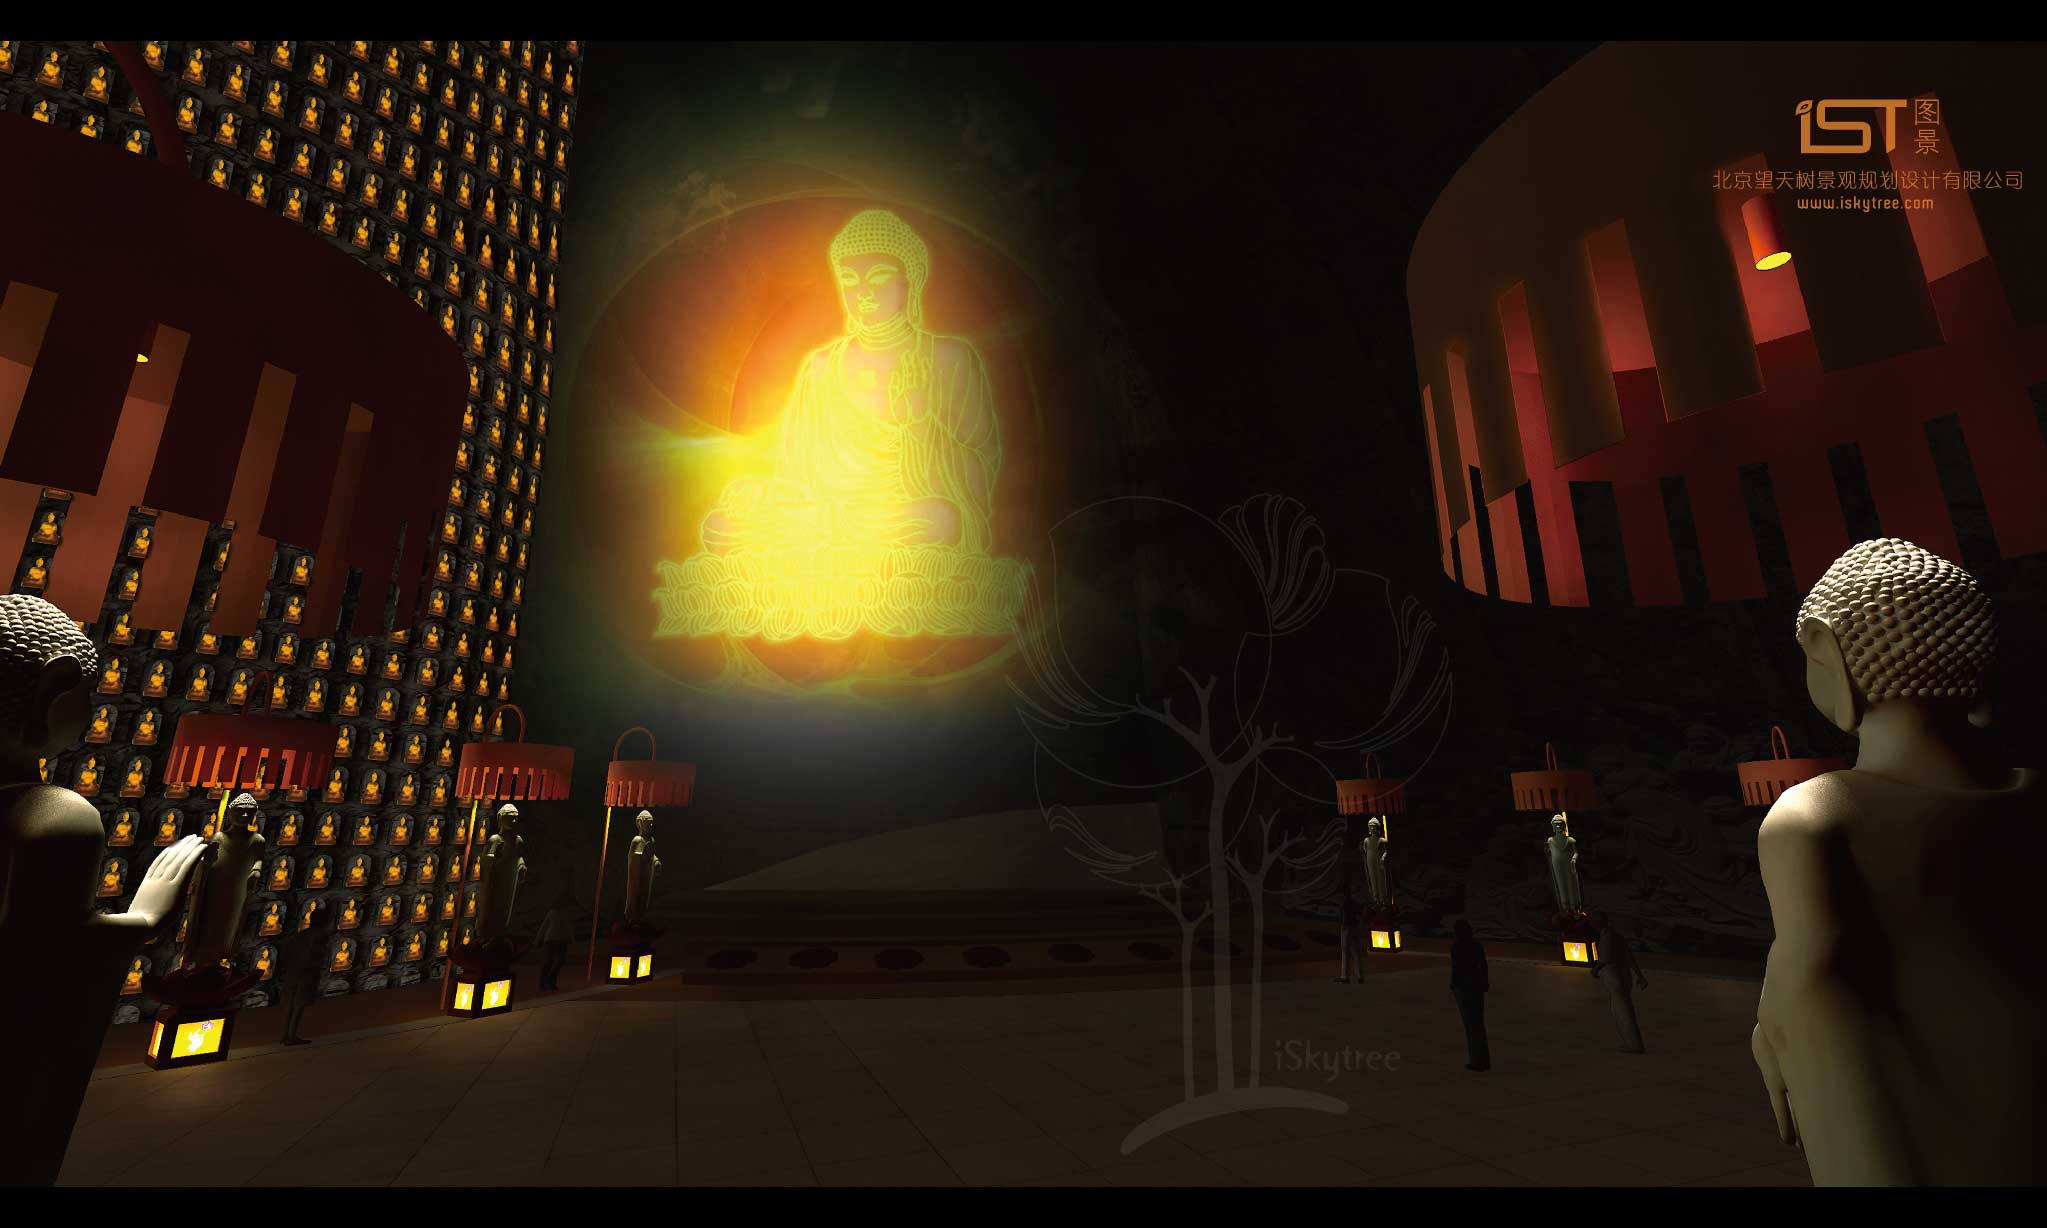 幻影成像的技术投射出的佛祖讲经